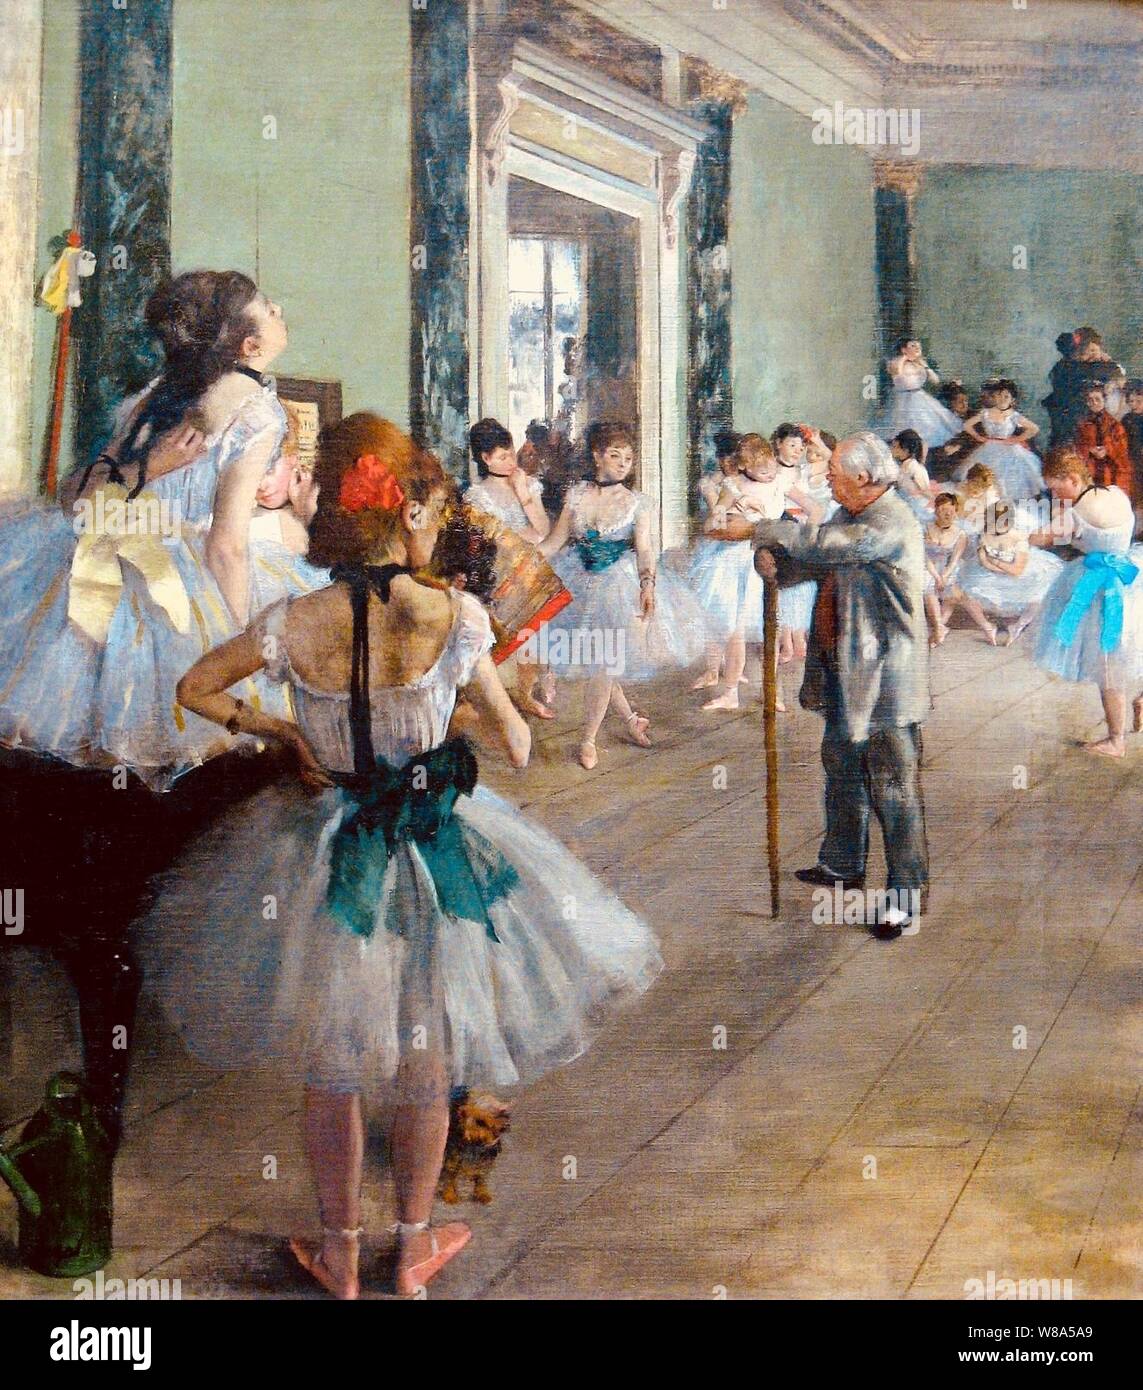 Degas, Ballet Class, 1874. Stock Photo